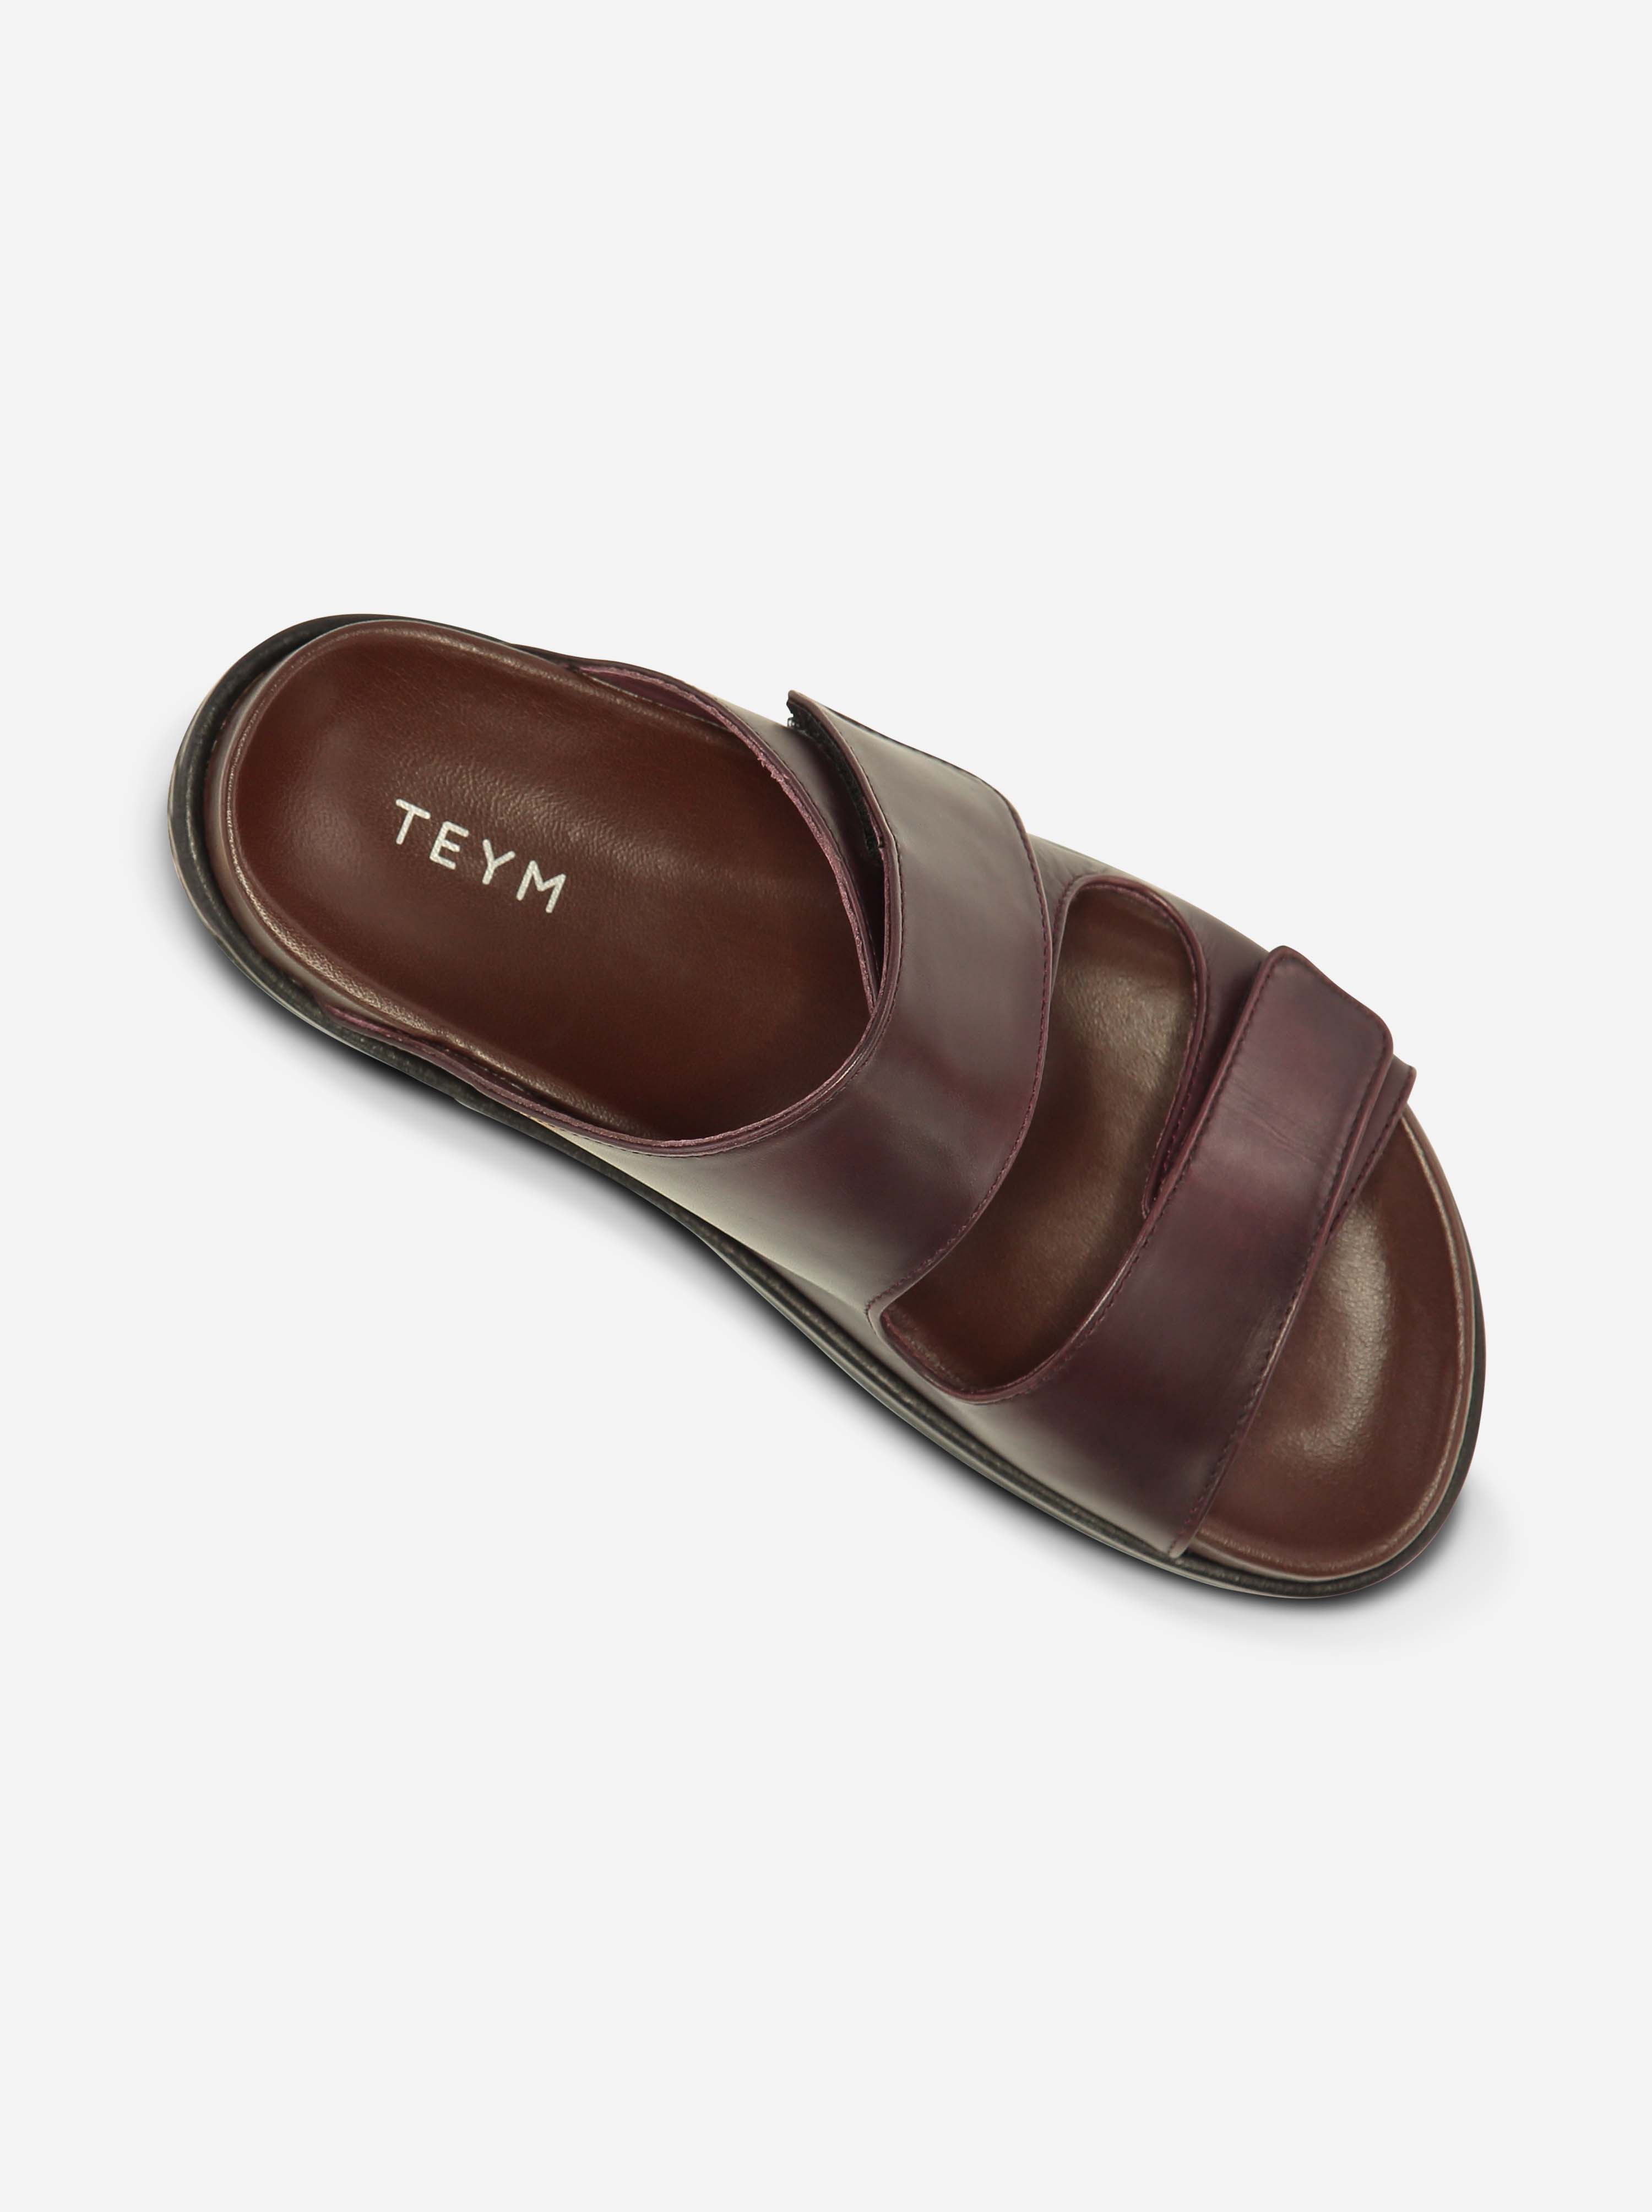 Teym - The Sandal - Burgundy - 6